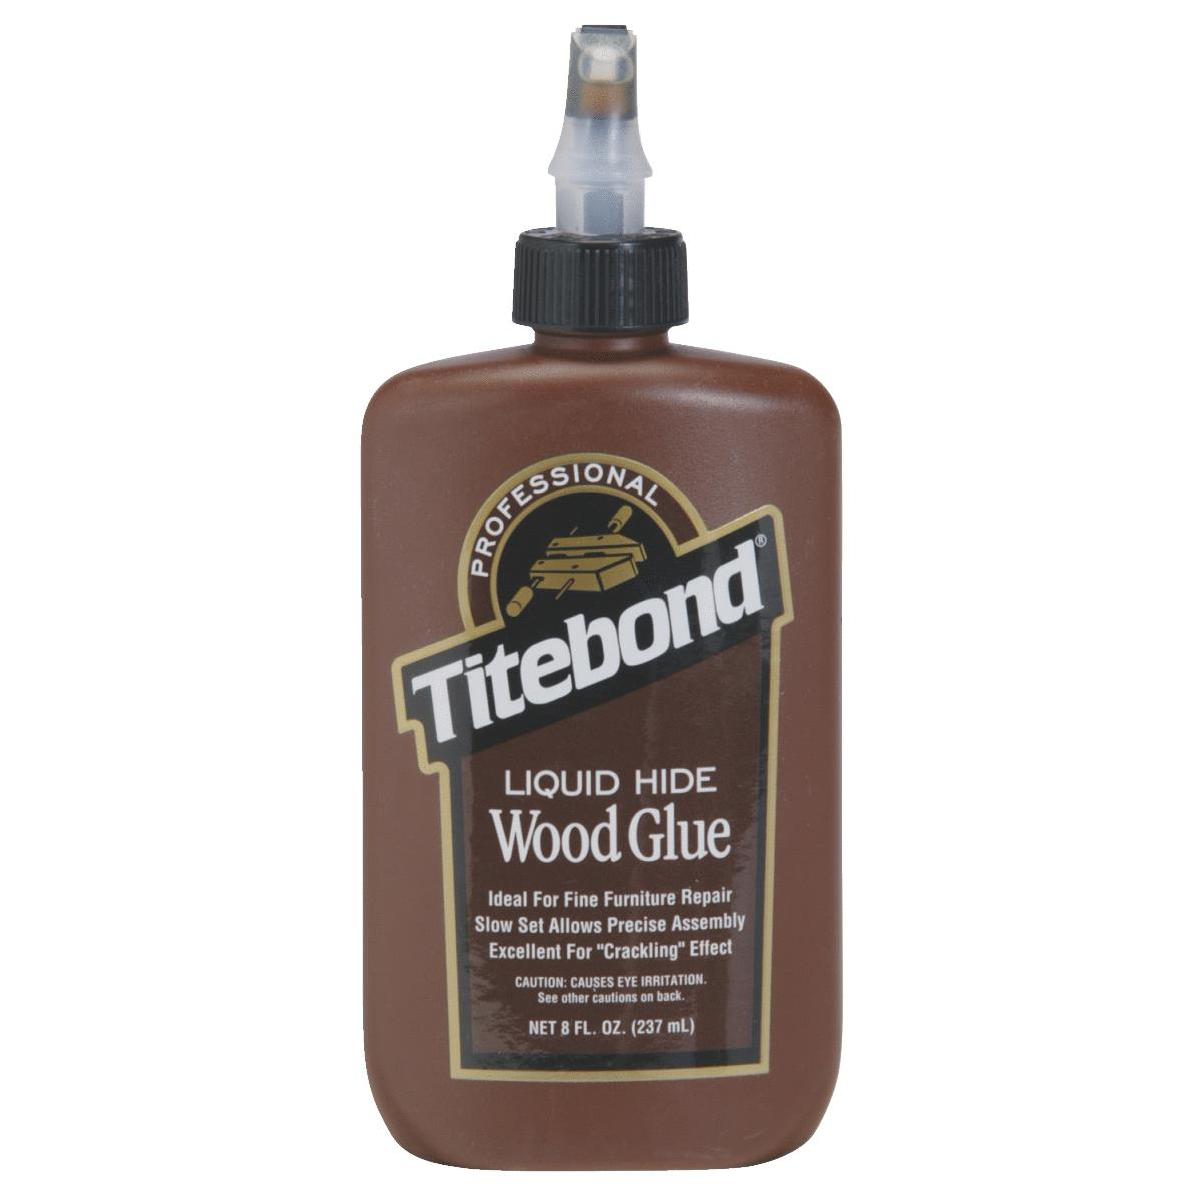 Купить клей тайтбонд. Клей Titebond 2 для дерева 118 мл. Titebond Liquid Hide Glue. Клей для гитары акустической Titebond. Titebond Liquid Hide Wood Glue клей для дерева.